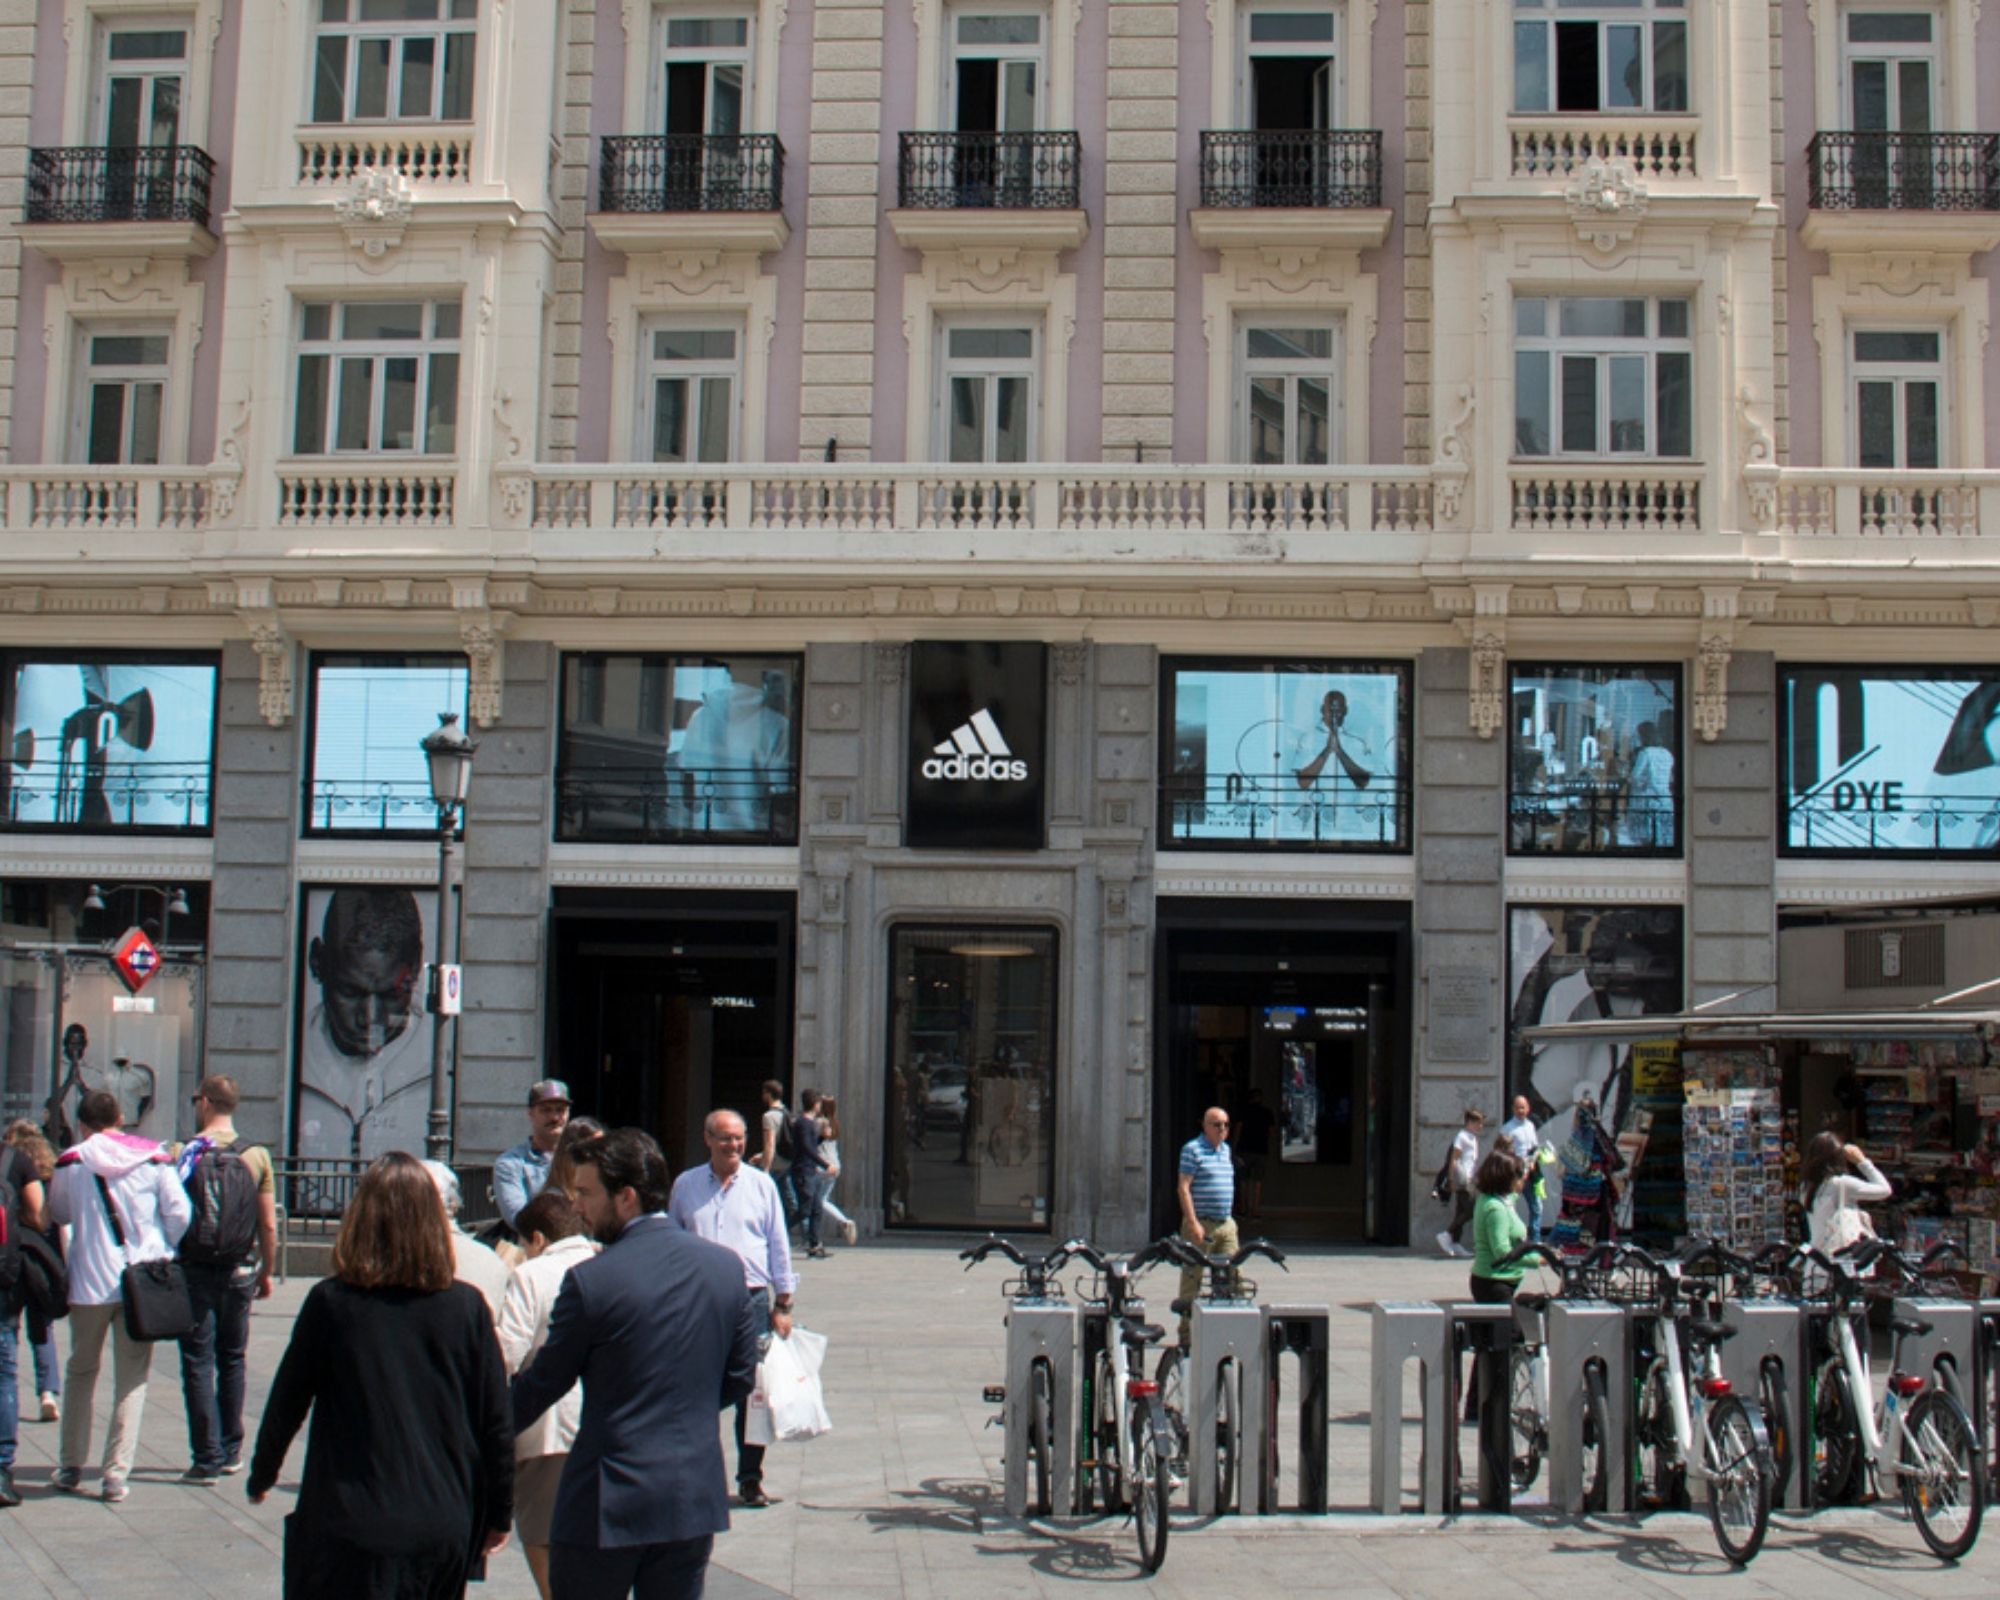 Adidas Transforma con pantallas LED los ventanales de su tienda de Gran Vía en Madrid - LED DREAM